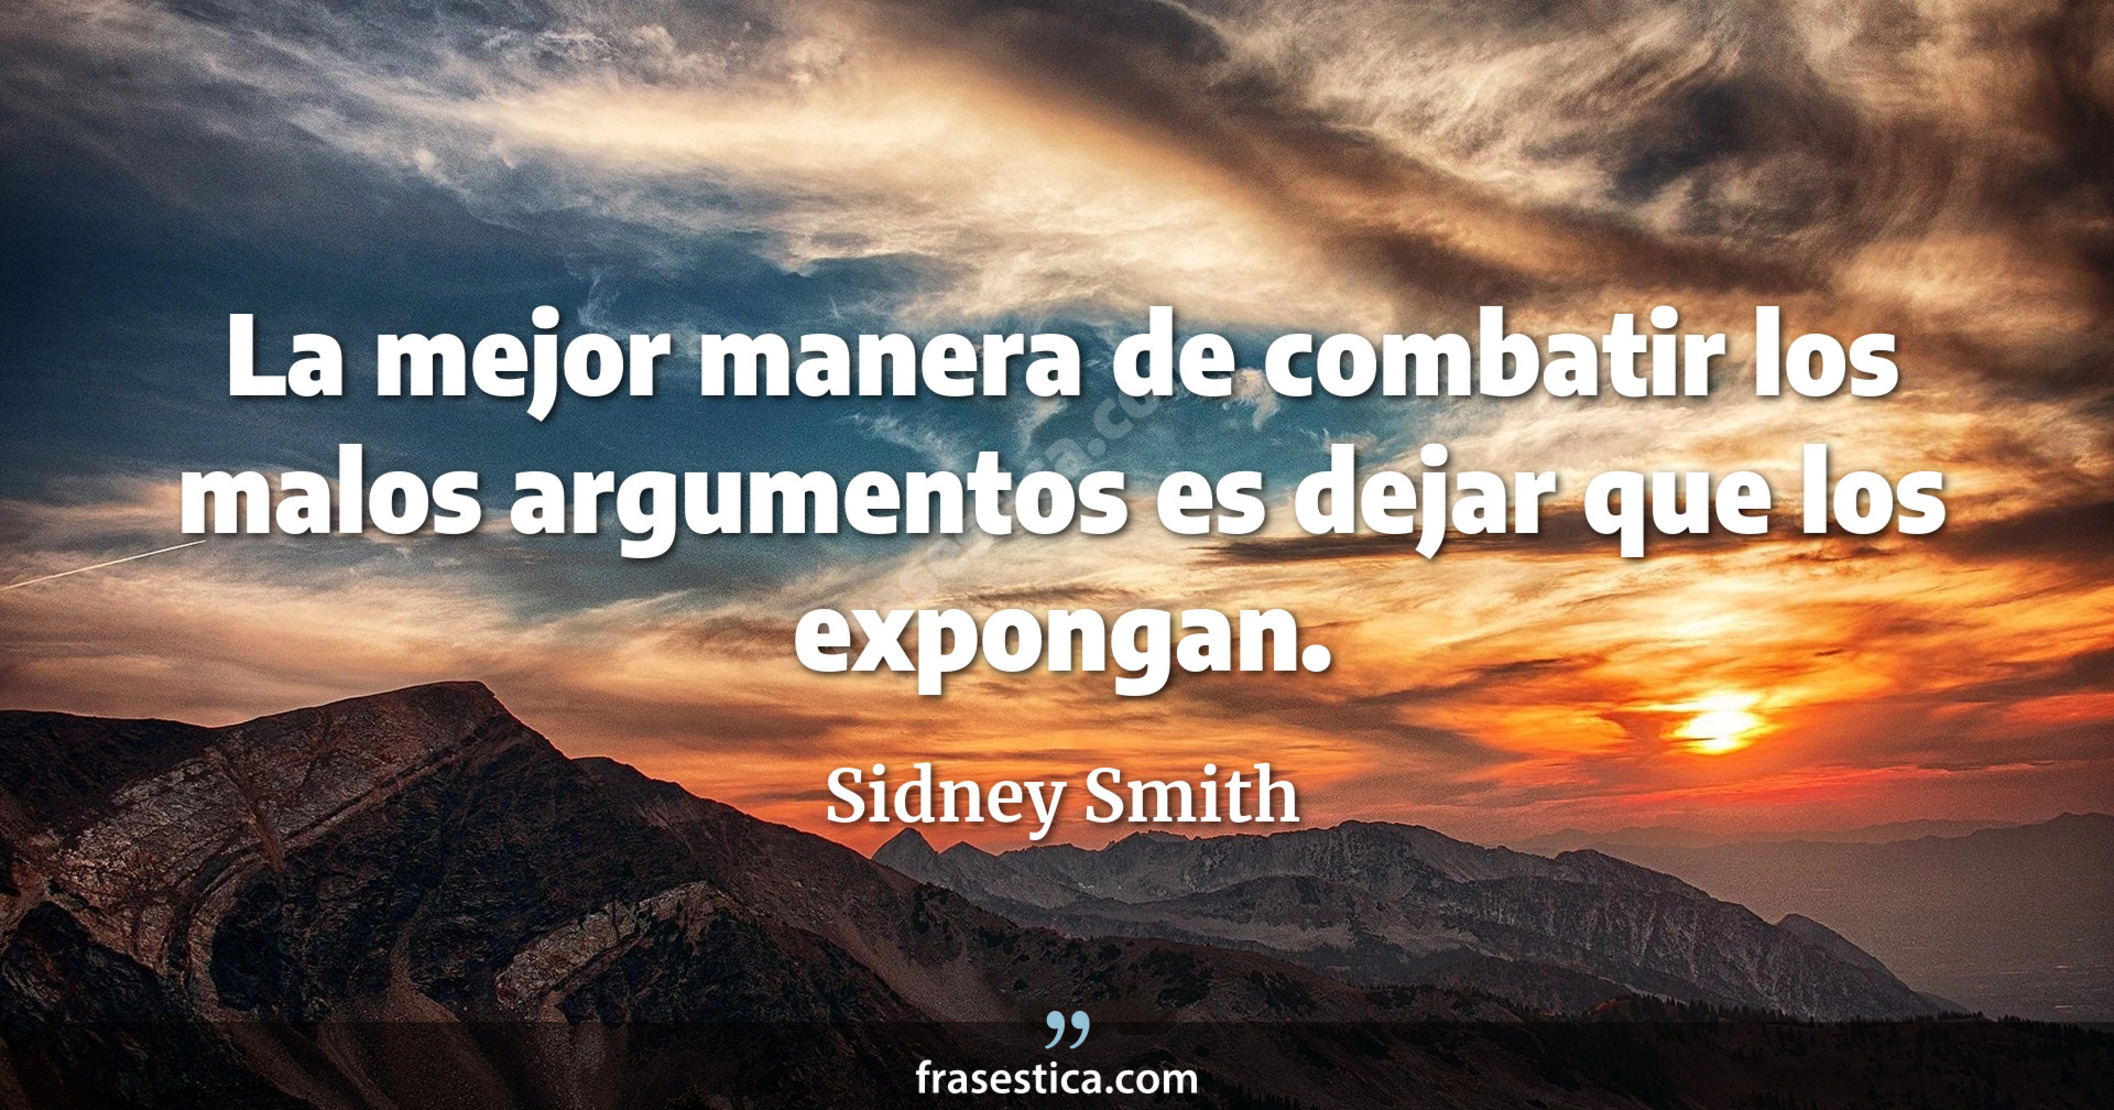 La mejor manera de combatir los malos argumentos es dejar que los expongan. - Sidney Smith